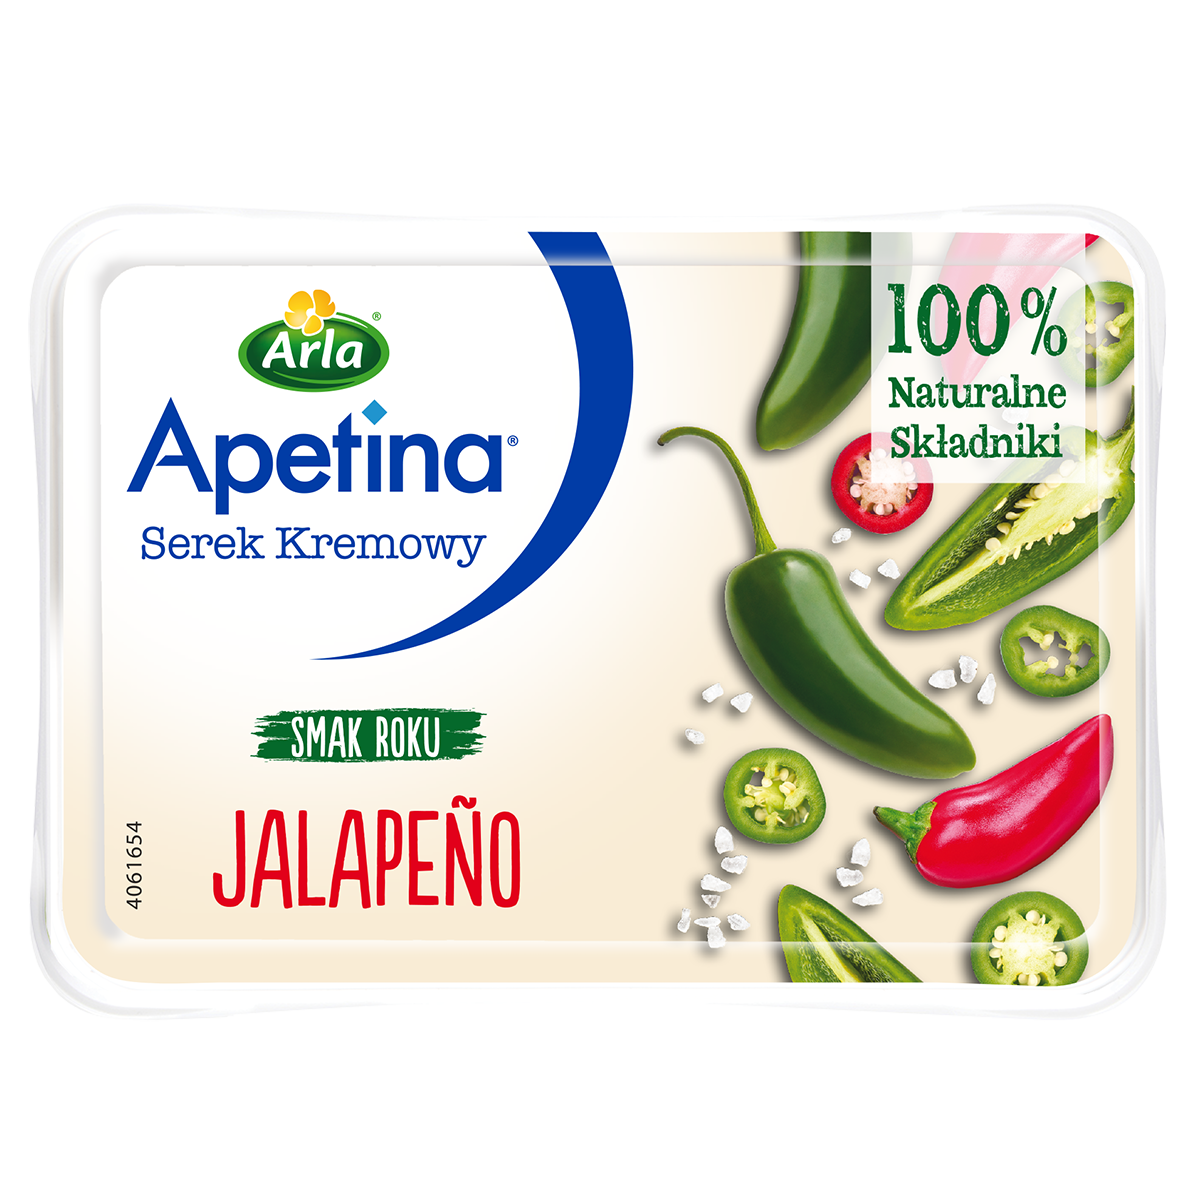 Apetina® Serek kremowy jalapeño 125g